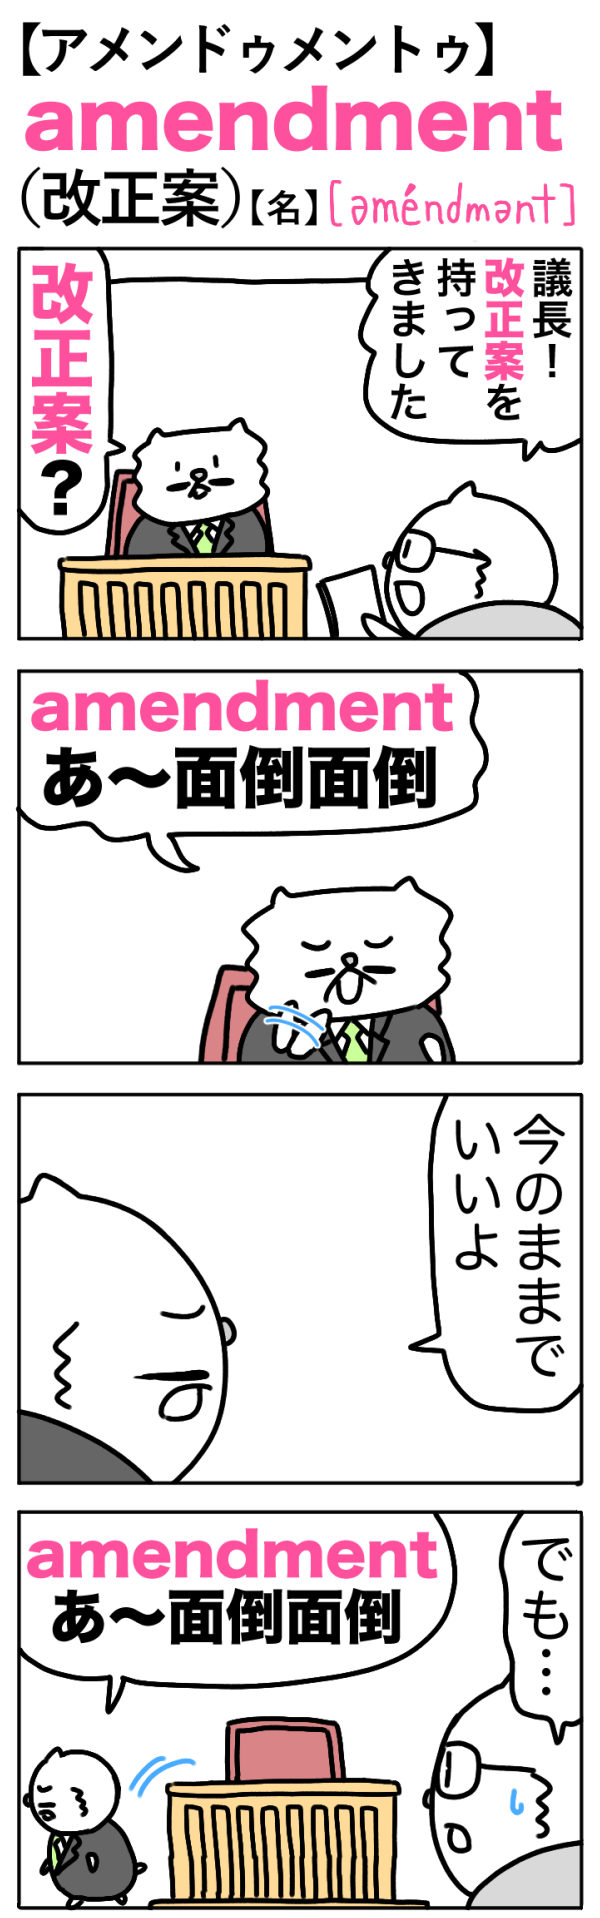 amendment（改正案）の語呂合わせ英単語